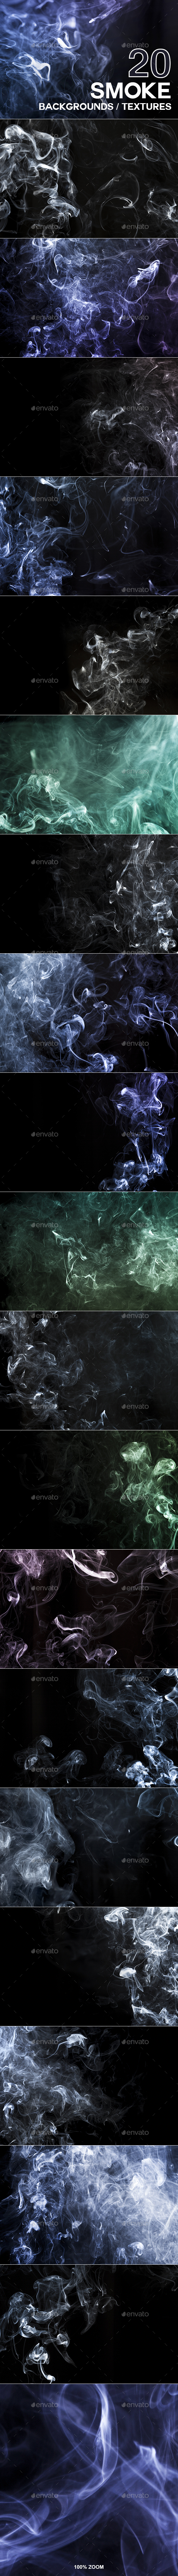 逼真烟雾萦绕背景纹理 20 Smoke Backgrounds / Textures插图